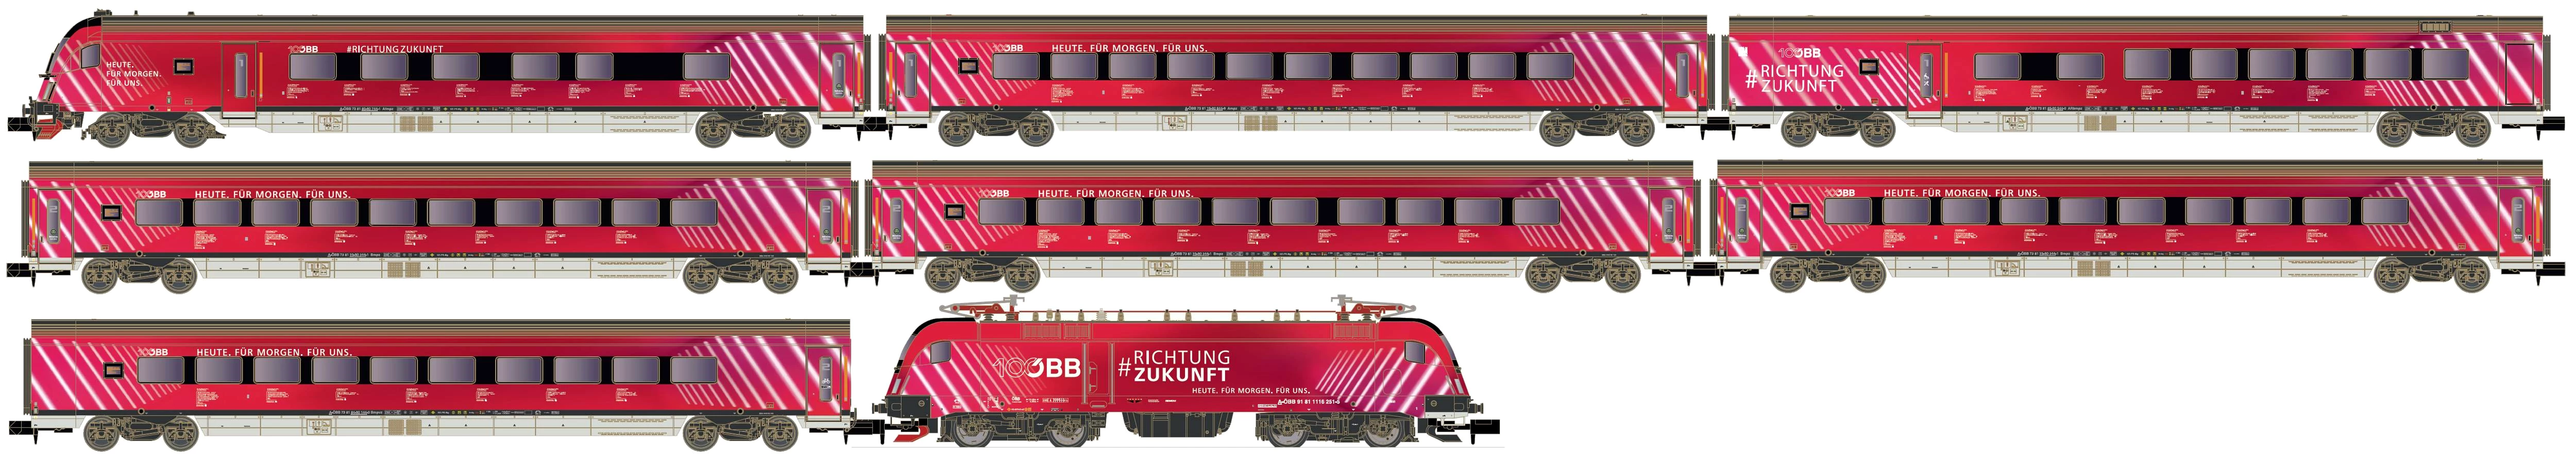 Hobbytrain H25227 N Personenzug mit Rh 1116, 100 Jahre, 8-tlg. der ÖBB Railjet 